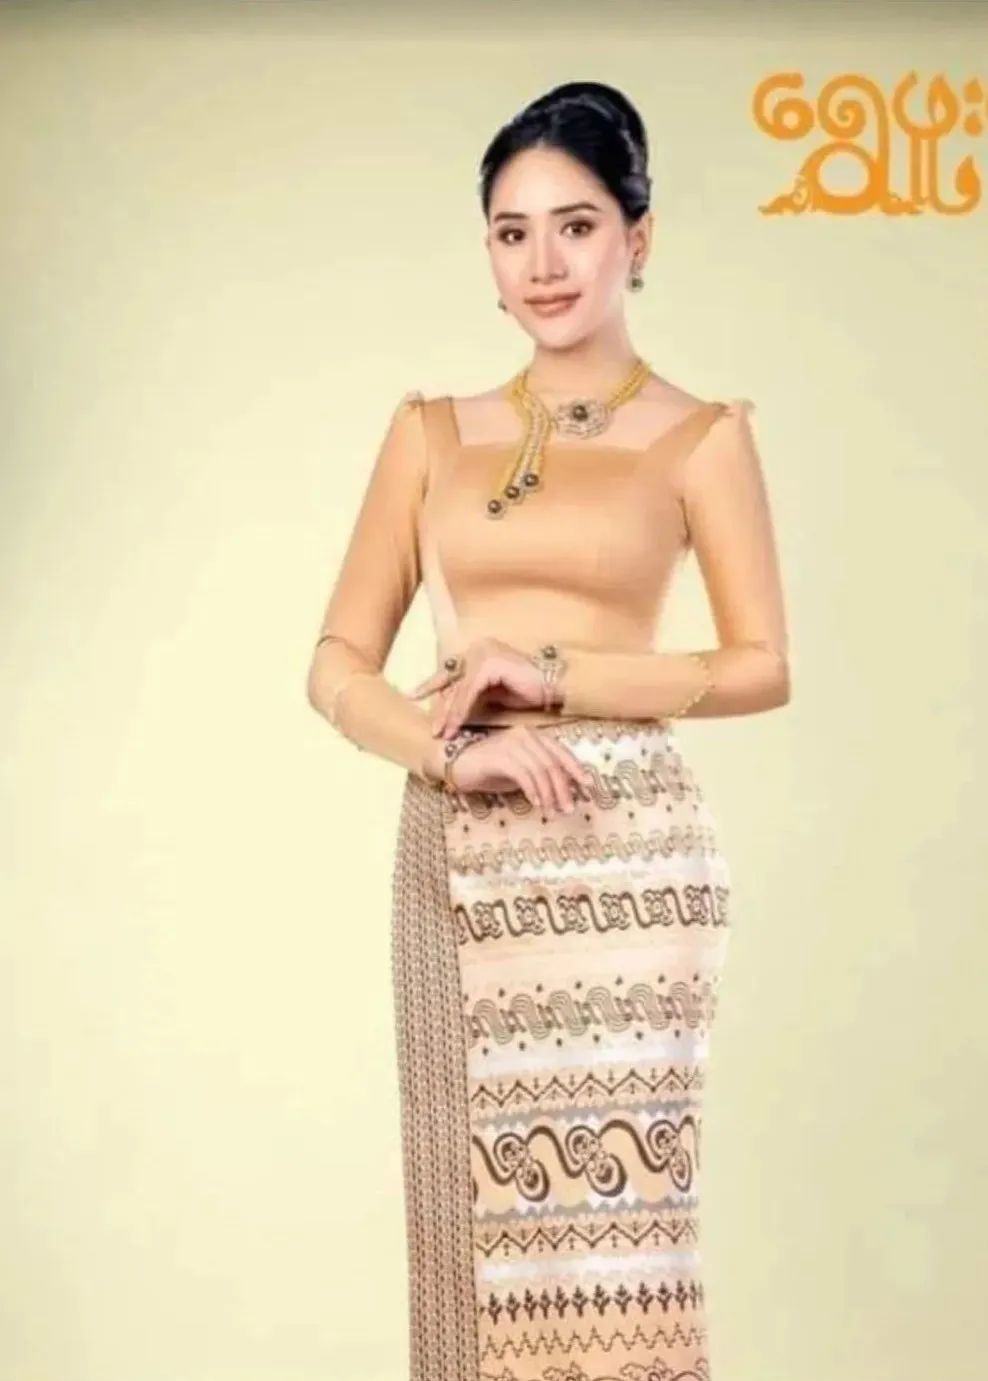 缅甸网民担忧此文化也被泰国占有